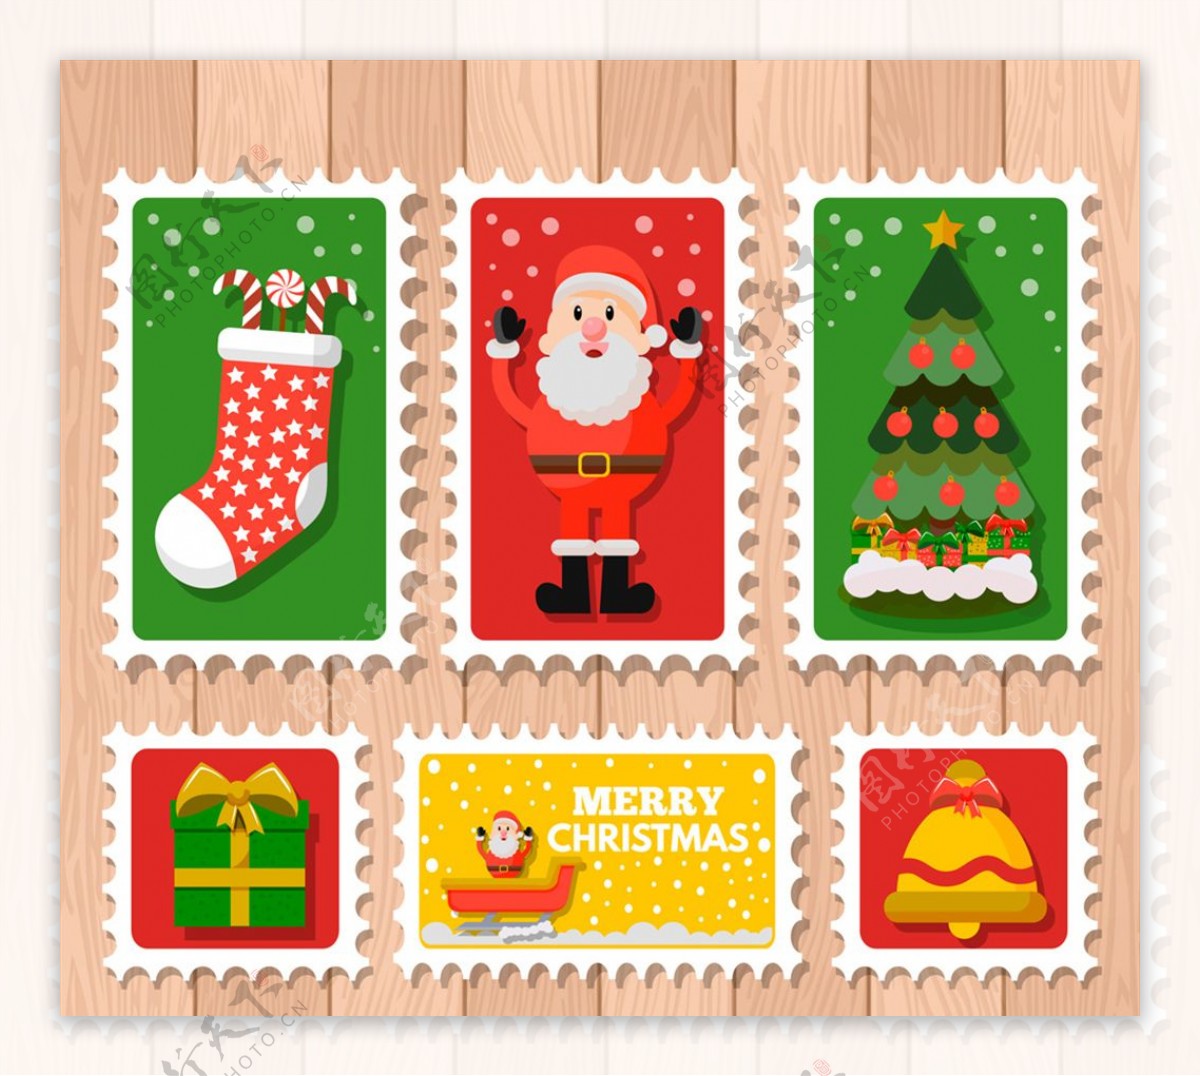 6款彩色圣诞邮票设计矢量素材